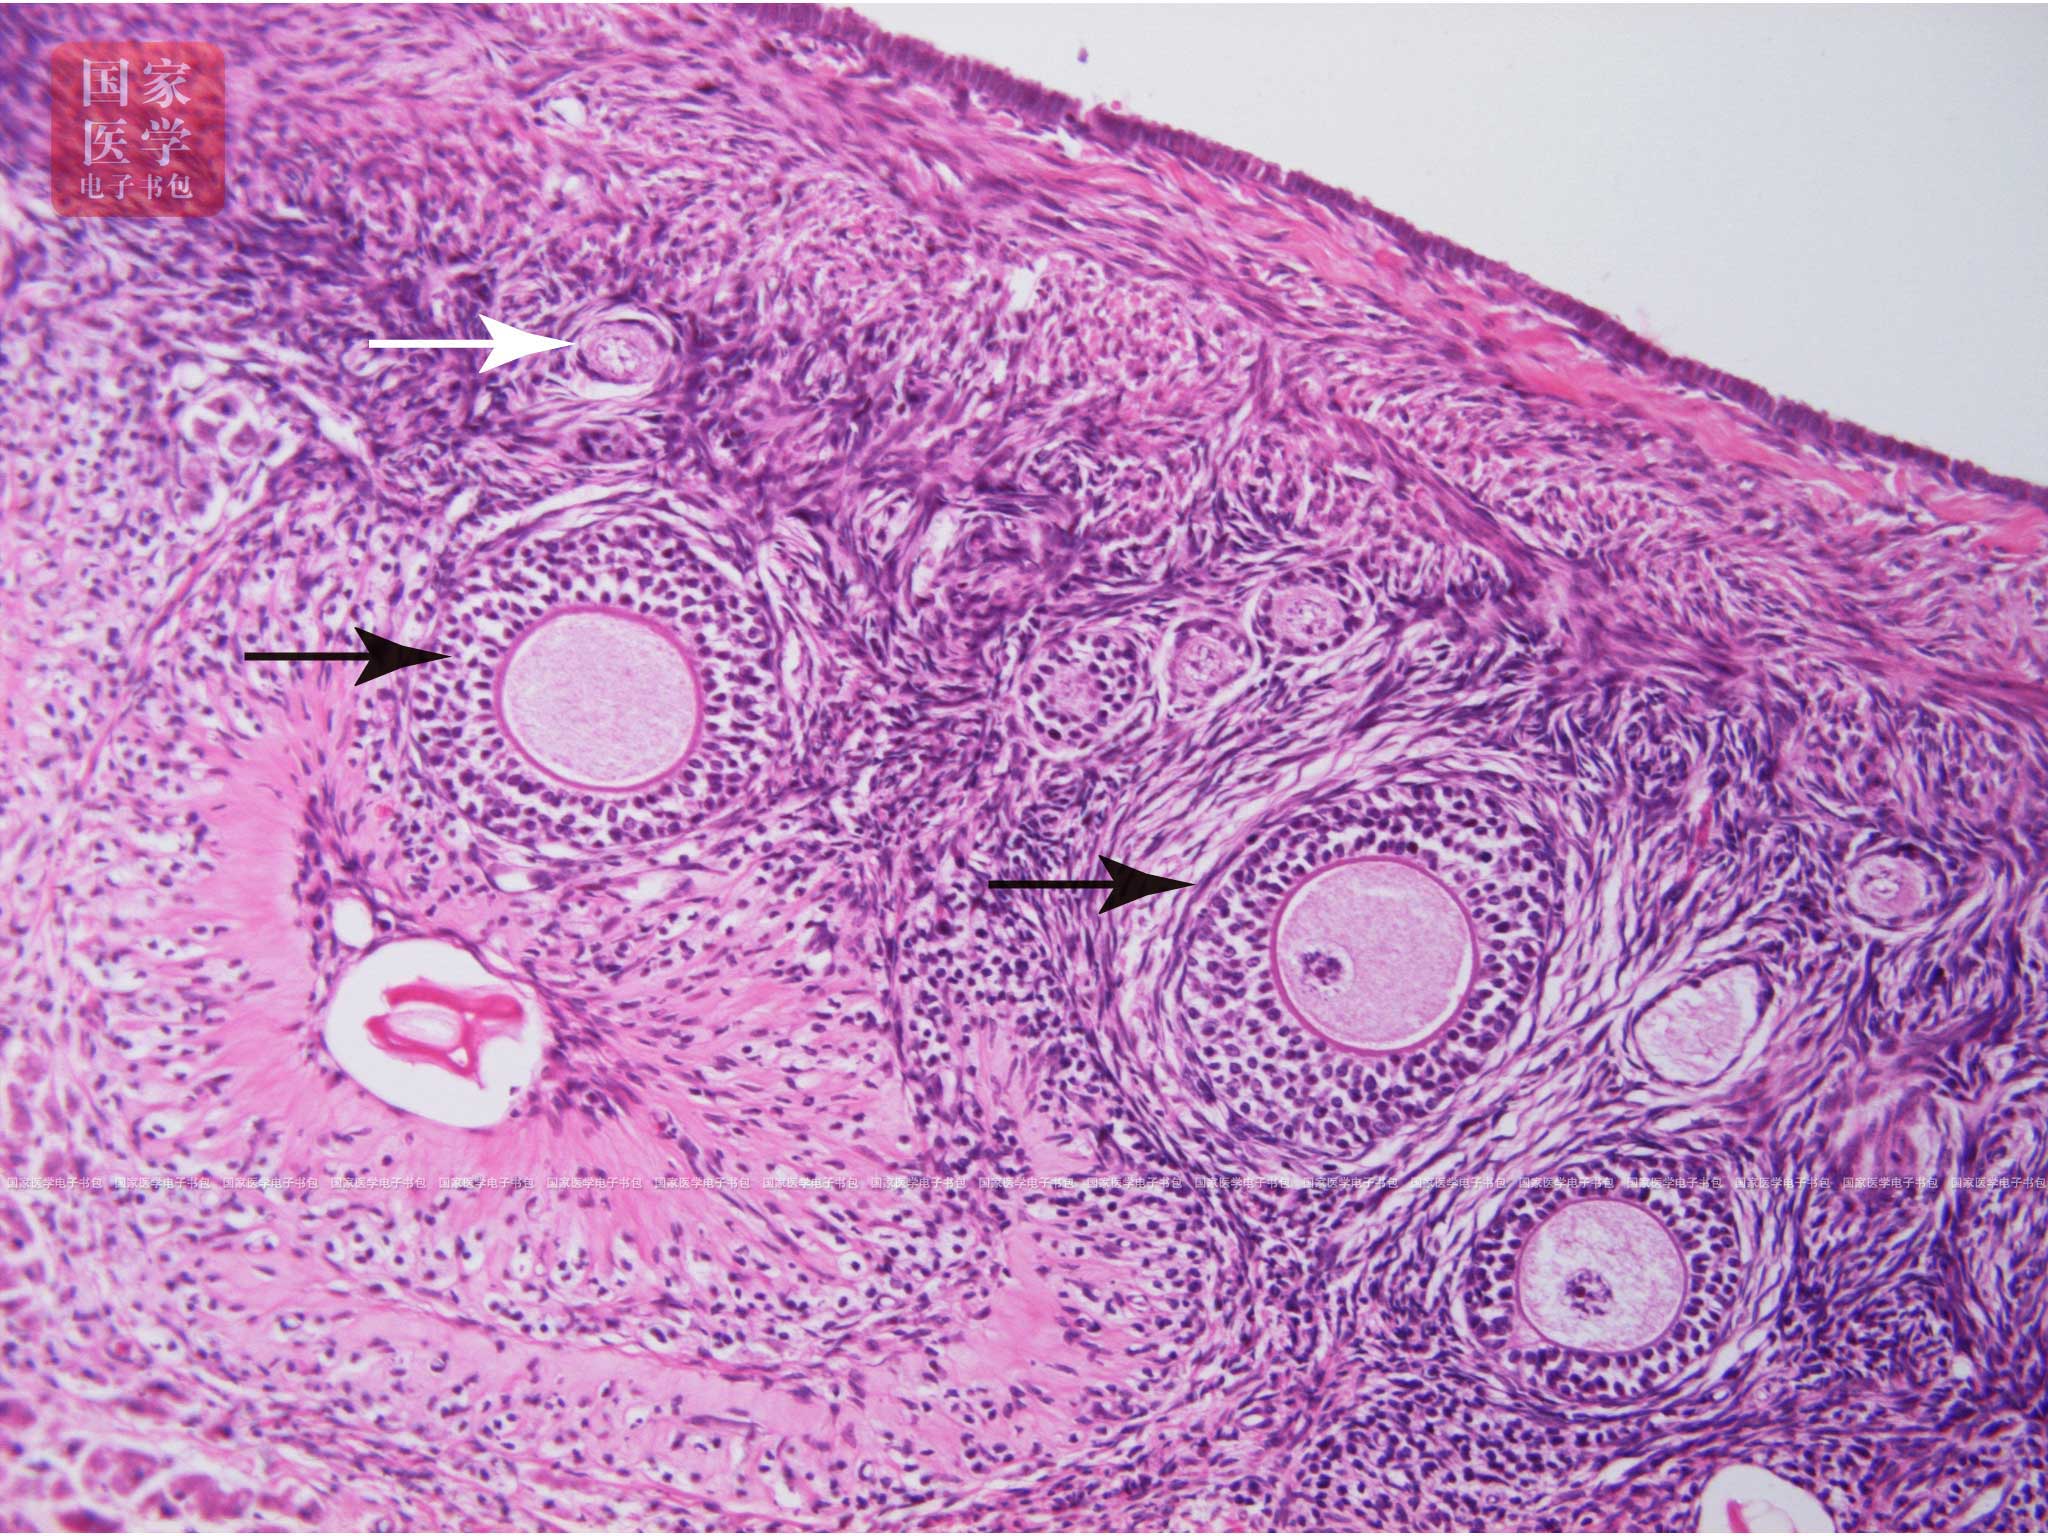 由中央一个初级卵母细胞(primaryoocyte)和周围单层扁平的卵泡细胞